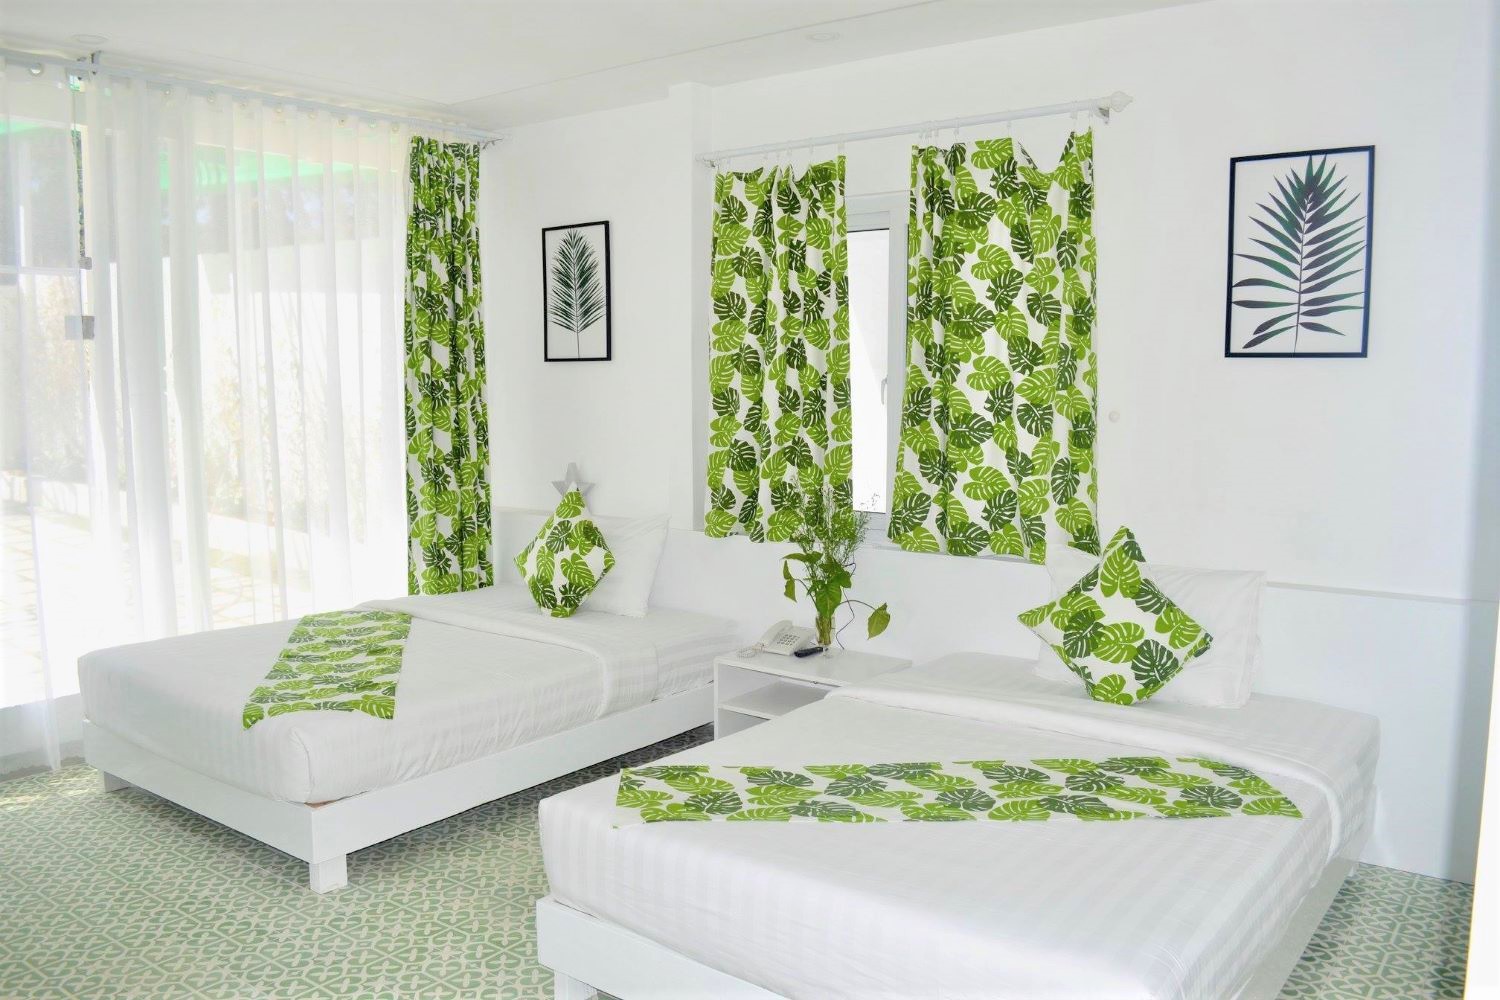 Canary House Dalat Hotel tràn ngập không gian xanh nơi con phố nhỏ bình yên 7